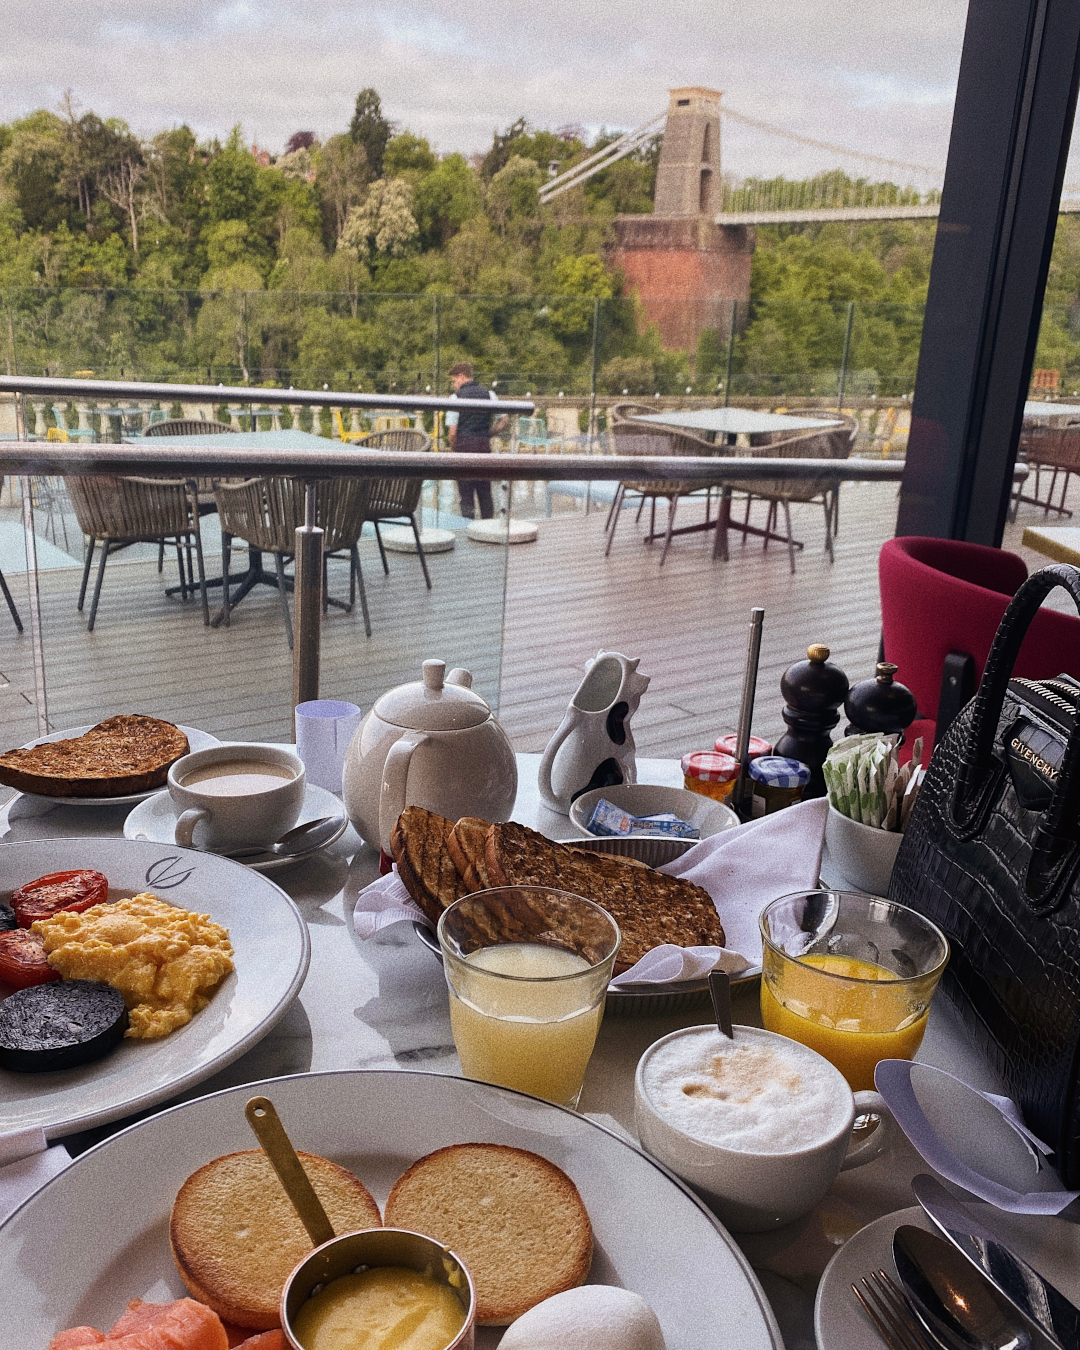 Breakfast at Avon Gorge Hotel